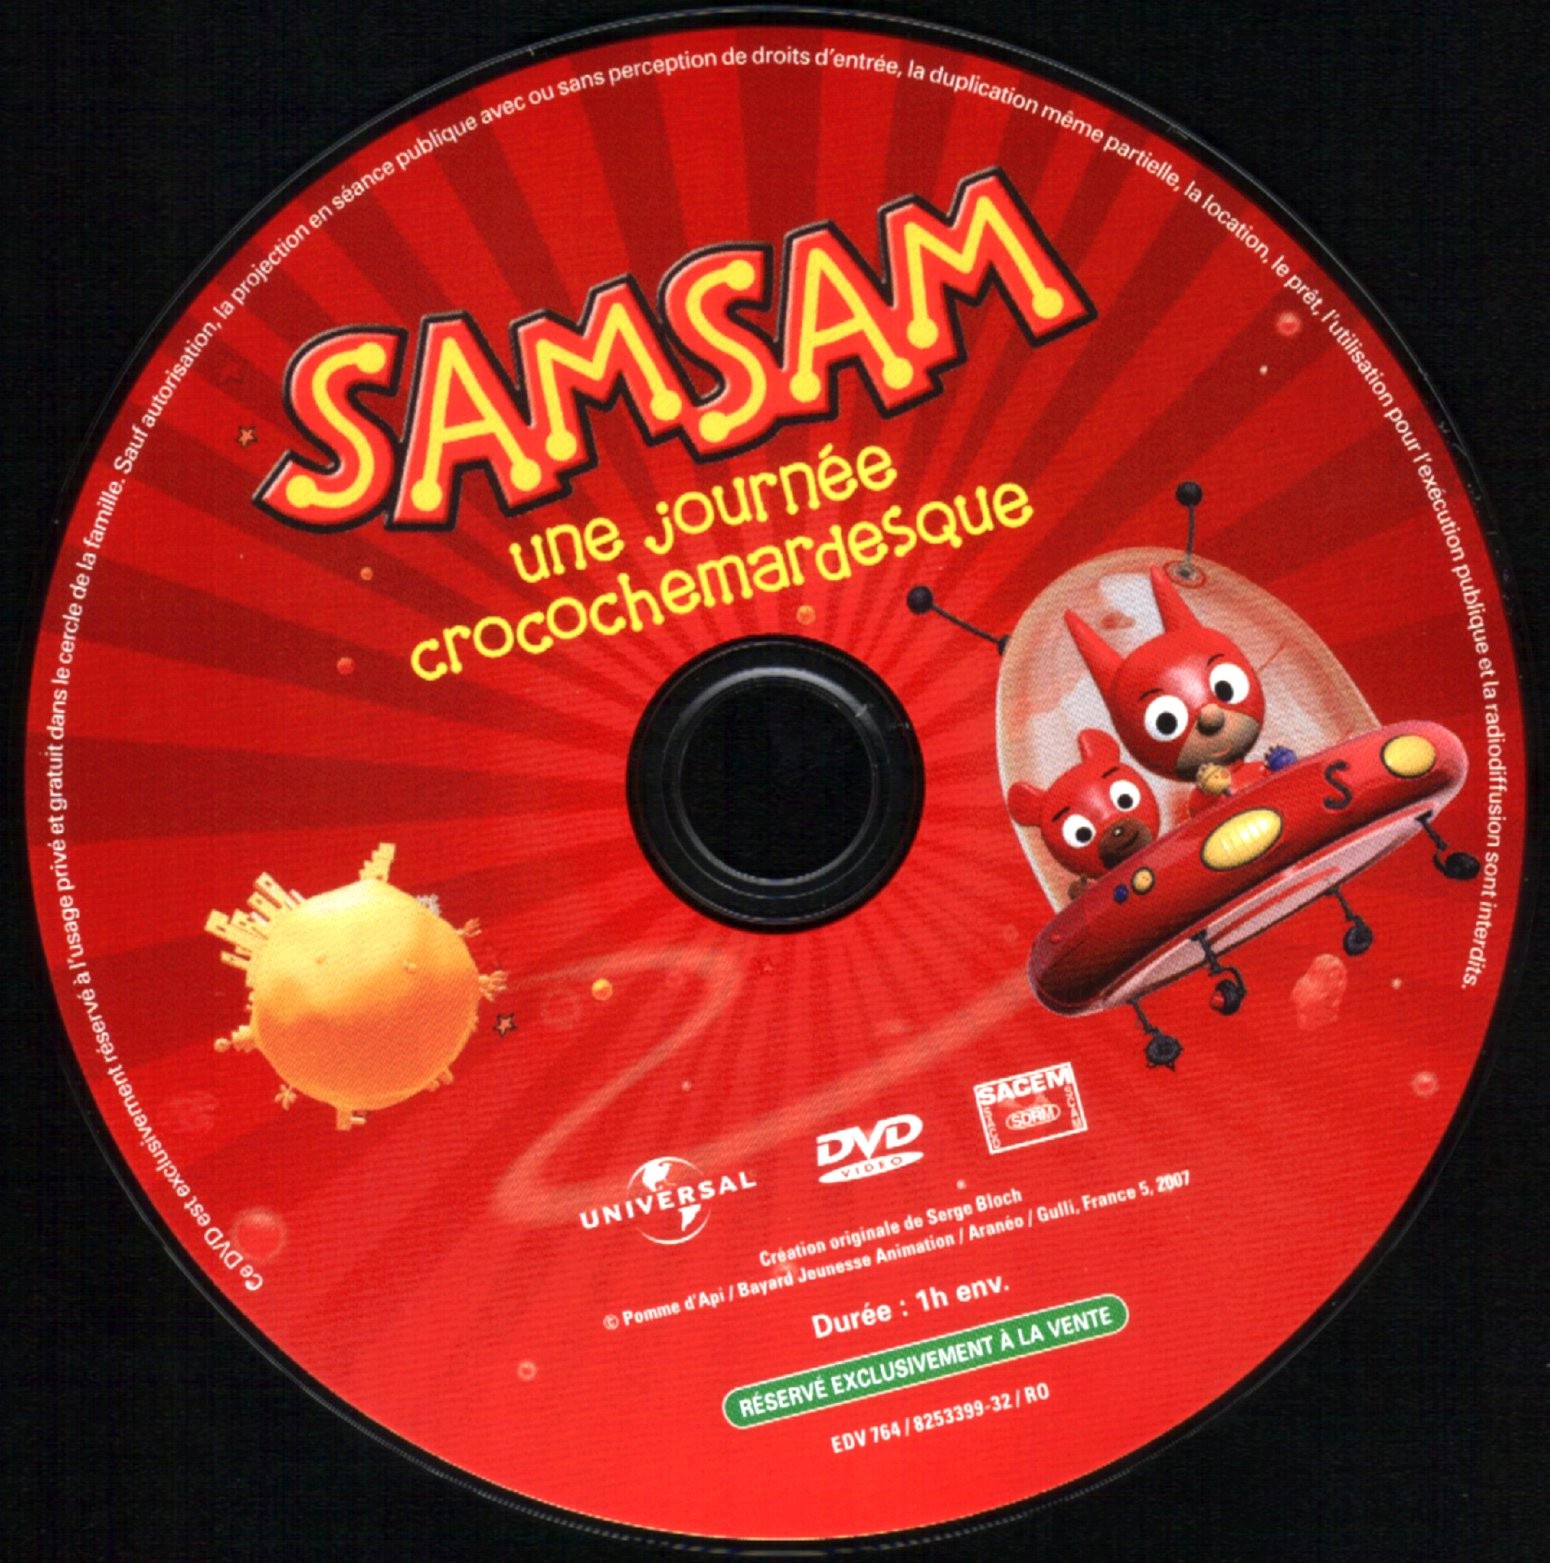 SamSam - Une journe crocochemardesque